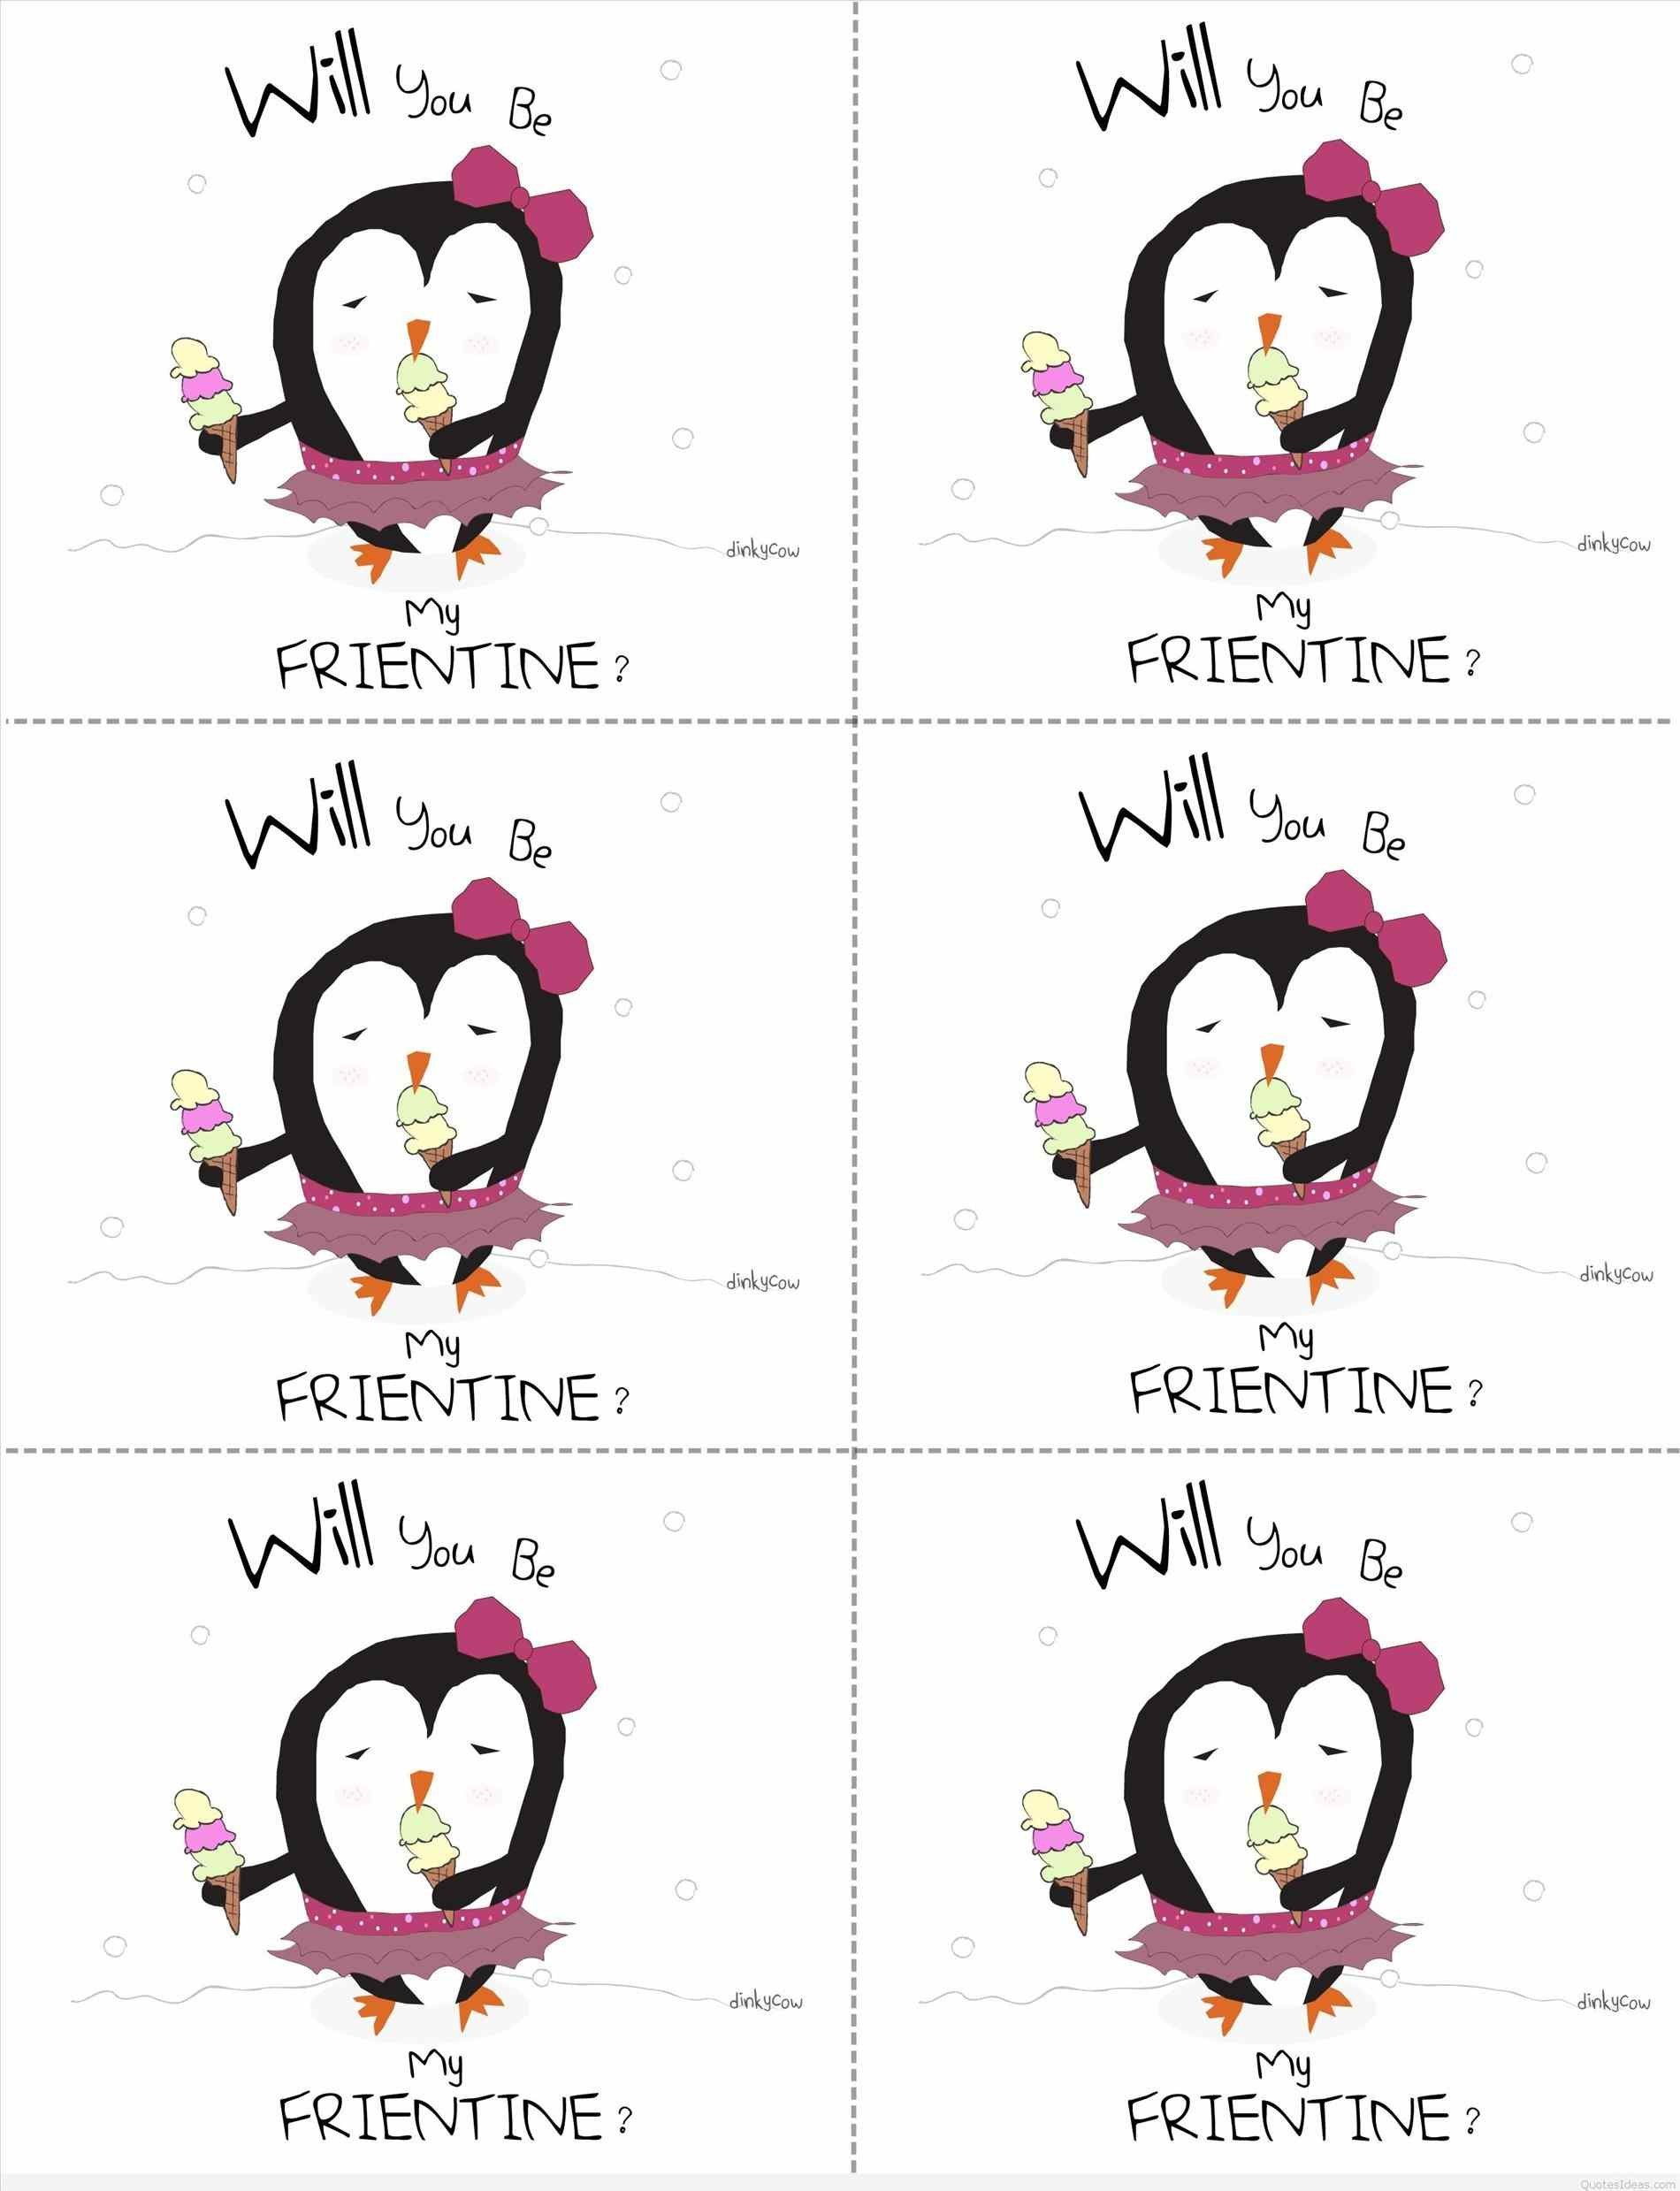 37+] Valentine Penguin Wallpaper - WallpaperSafari